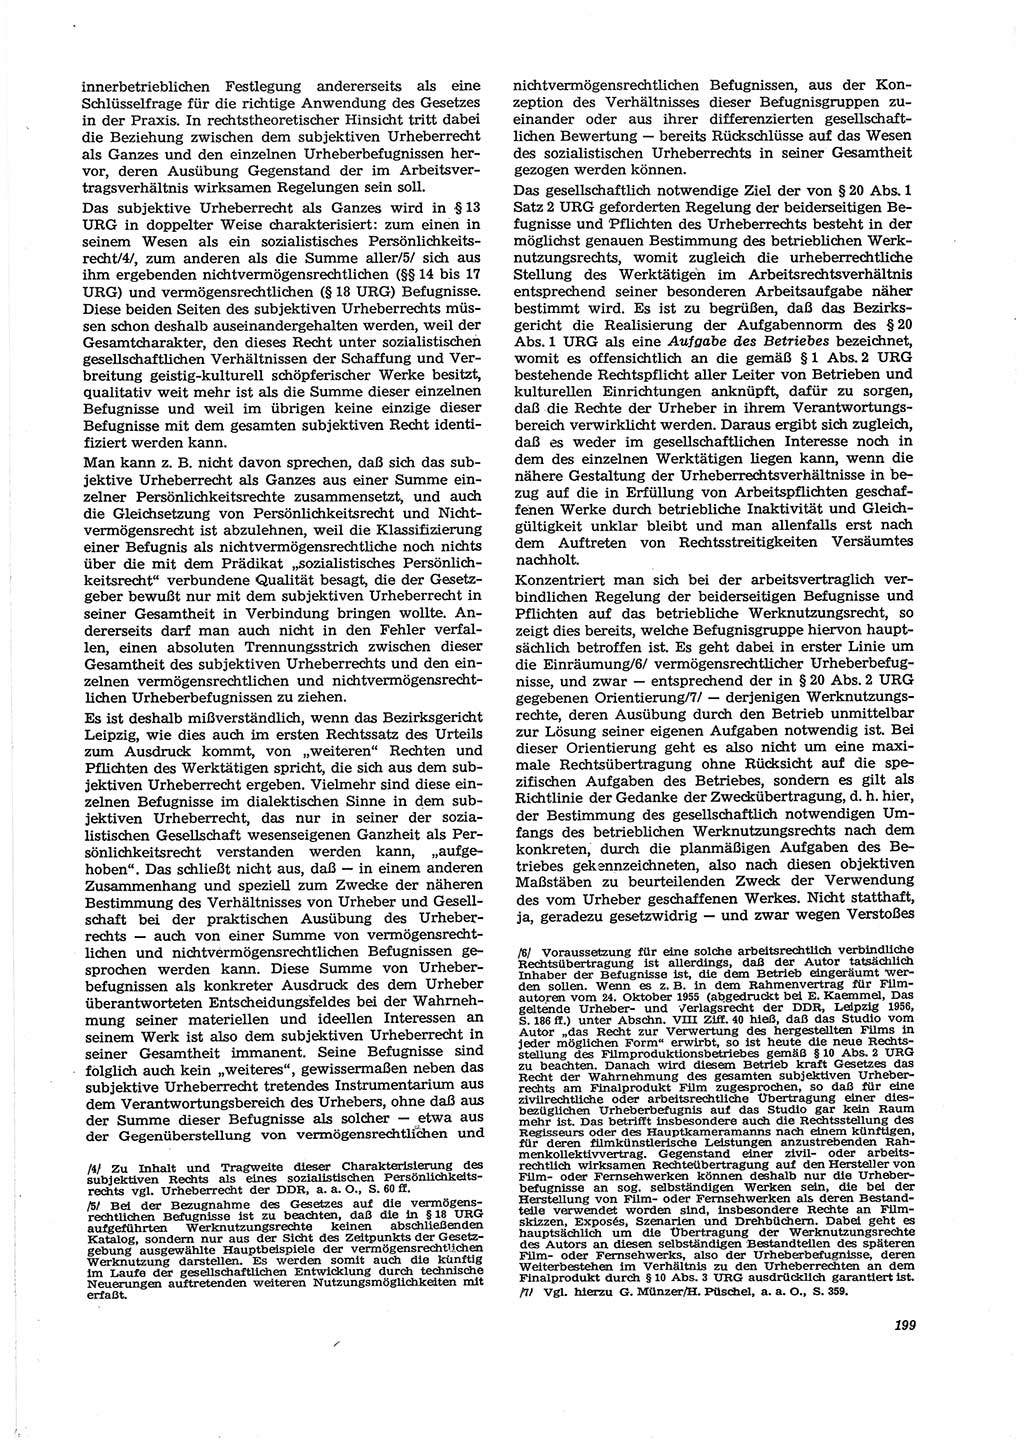 Neue Justiz (NJ), Zeitschrift für Recht und Rechtswissenschaft [Deutsche Demokratische Republik (DDR)], 29. Jahrgang 1975, Seite 199 (NJ DDR 1975, S. 199)